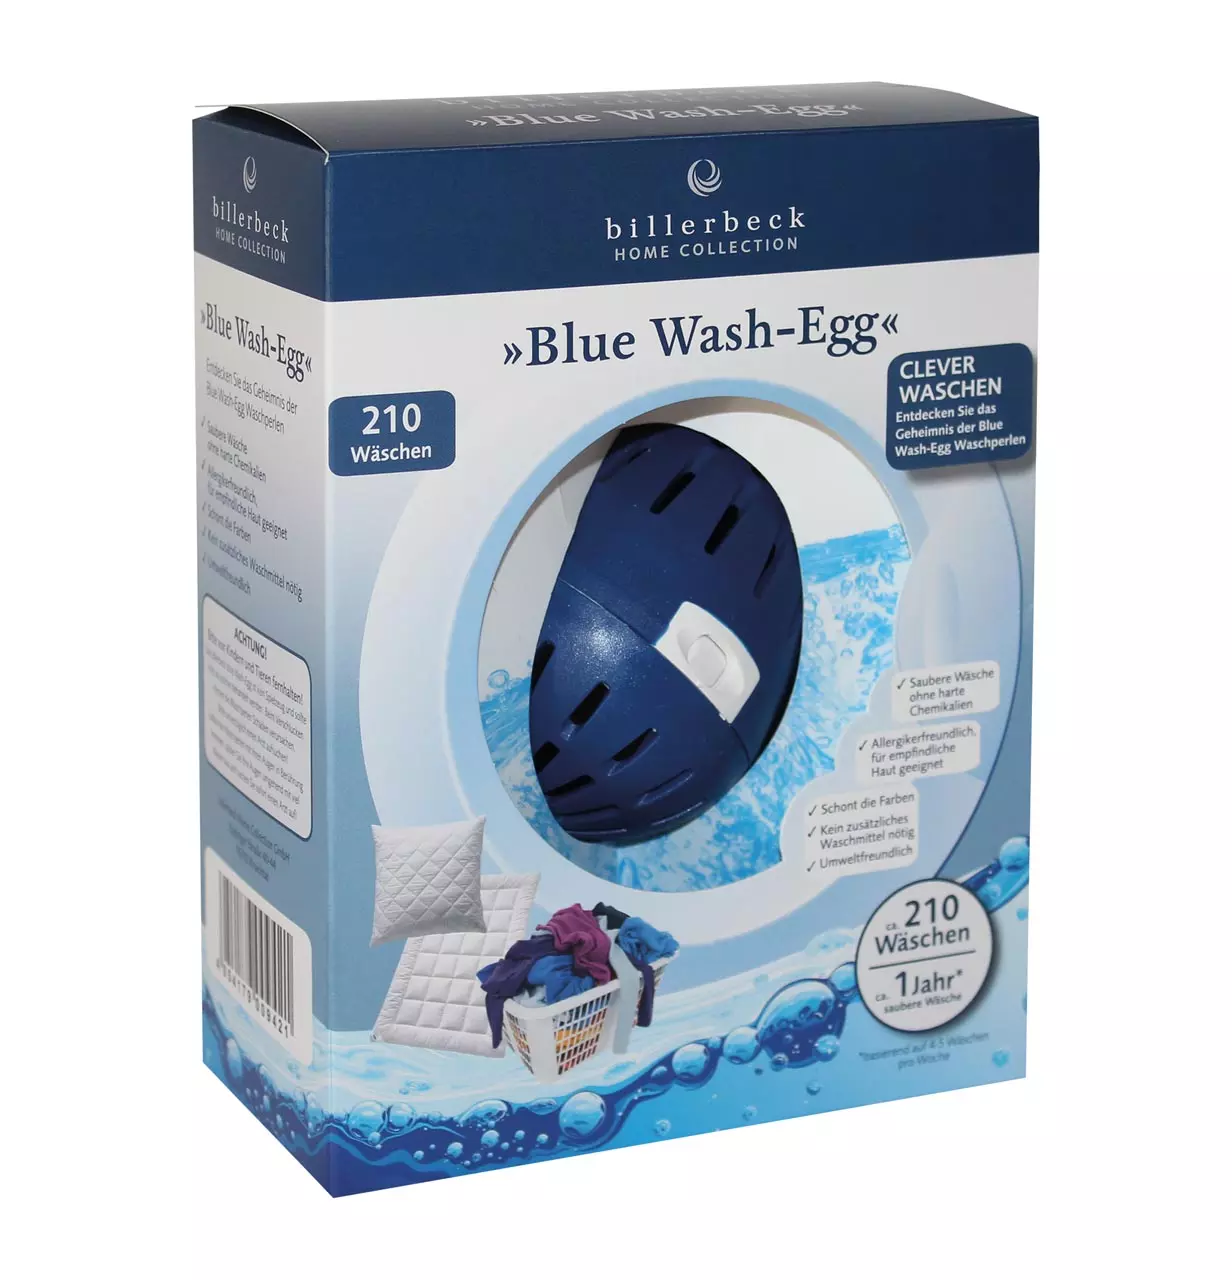 billerbeck-blue-wash-egg_bio-waschmittel_verpackungskarton

